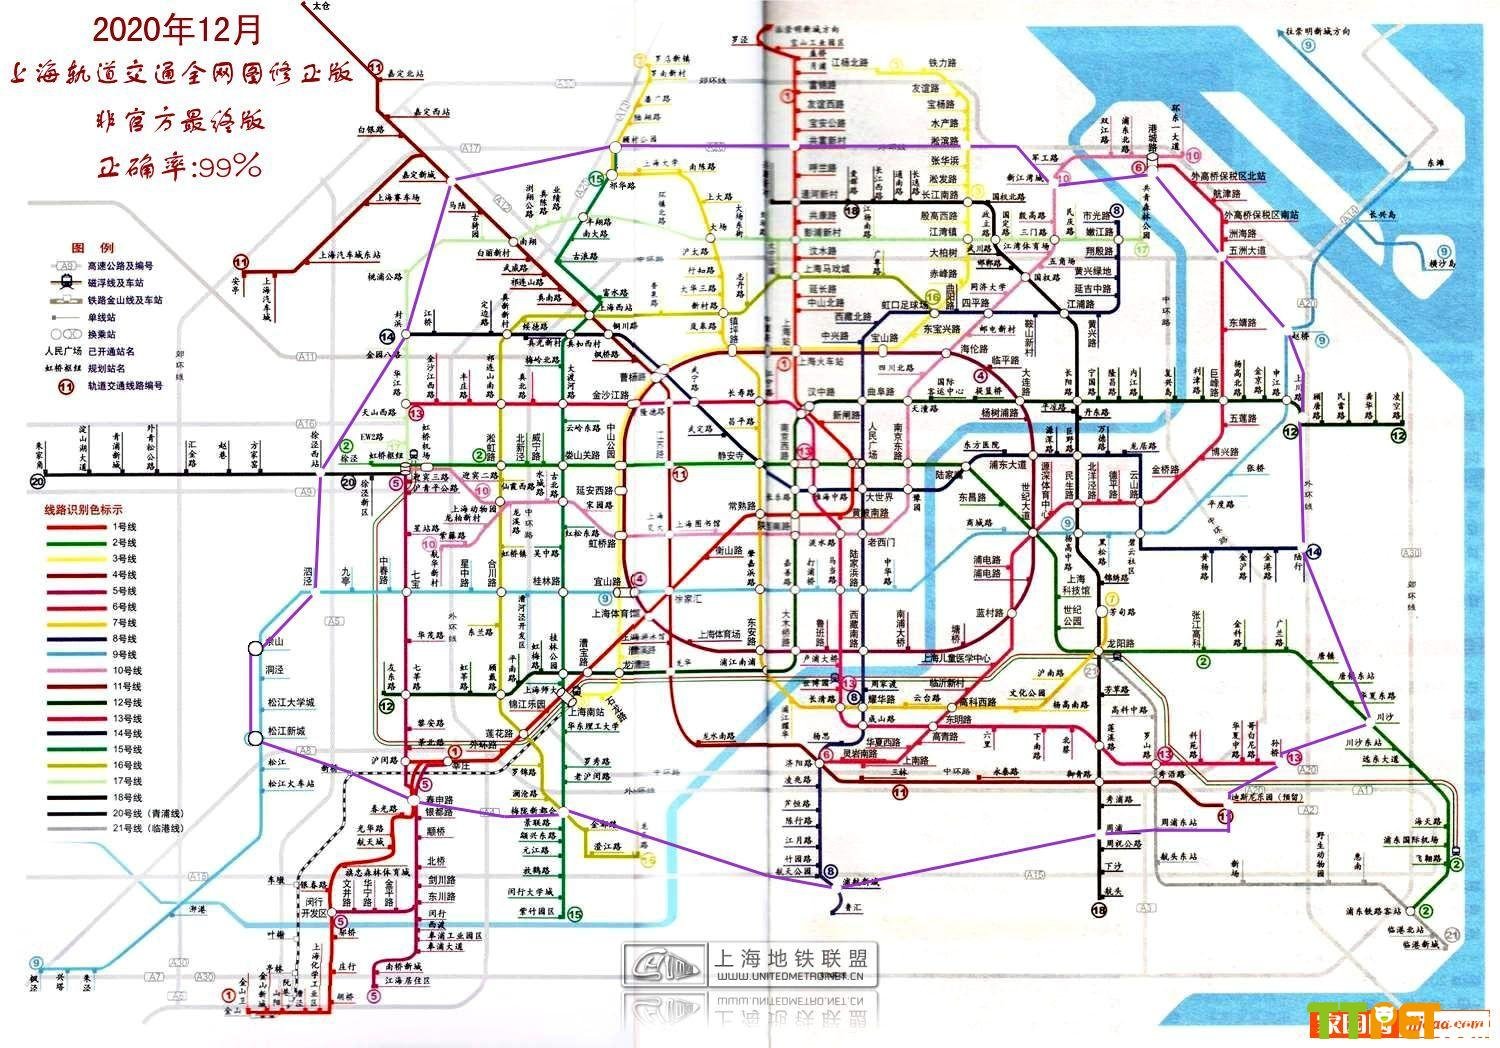 схема линий пекинского метрополитена